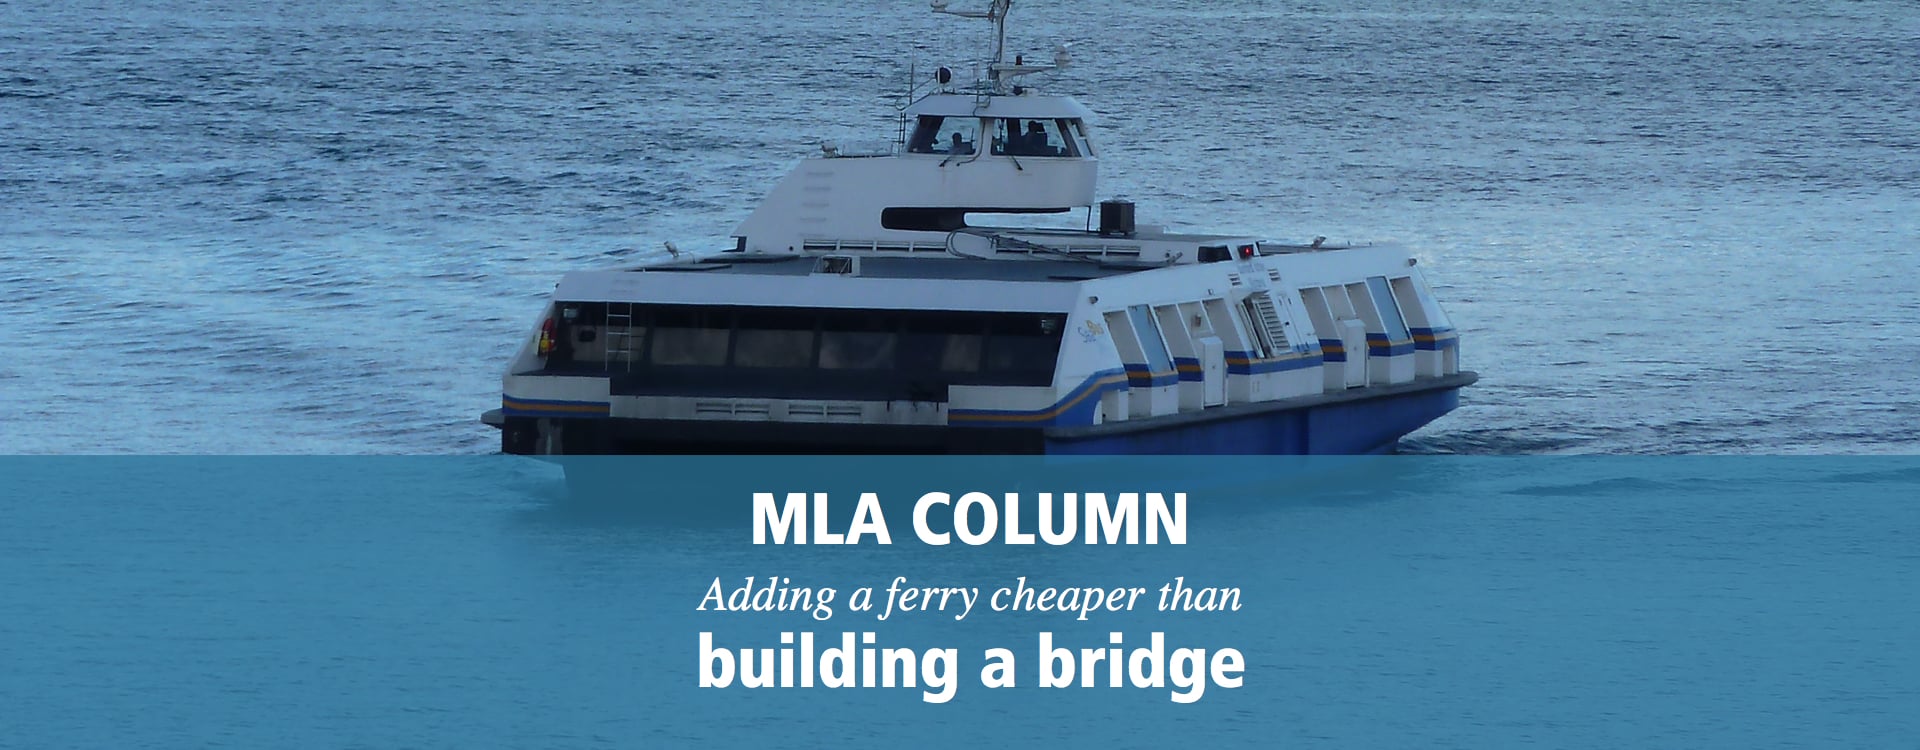 Adding a ferry cheaper than building a bridge